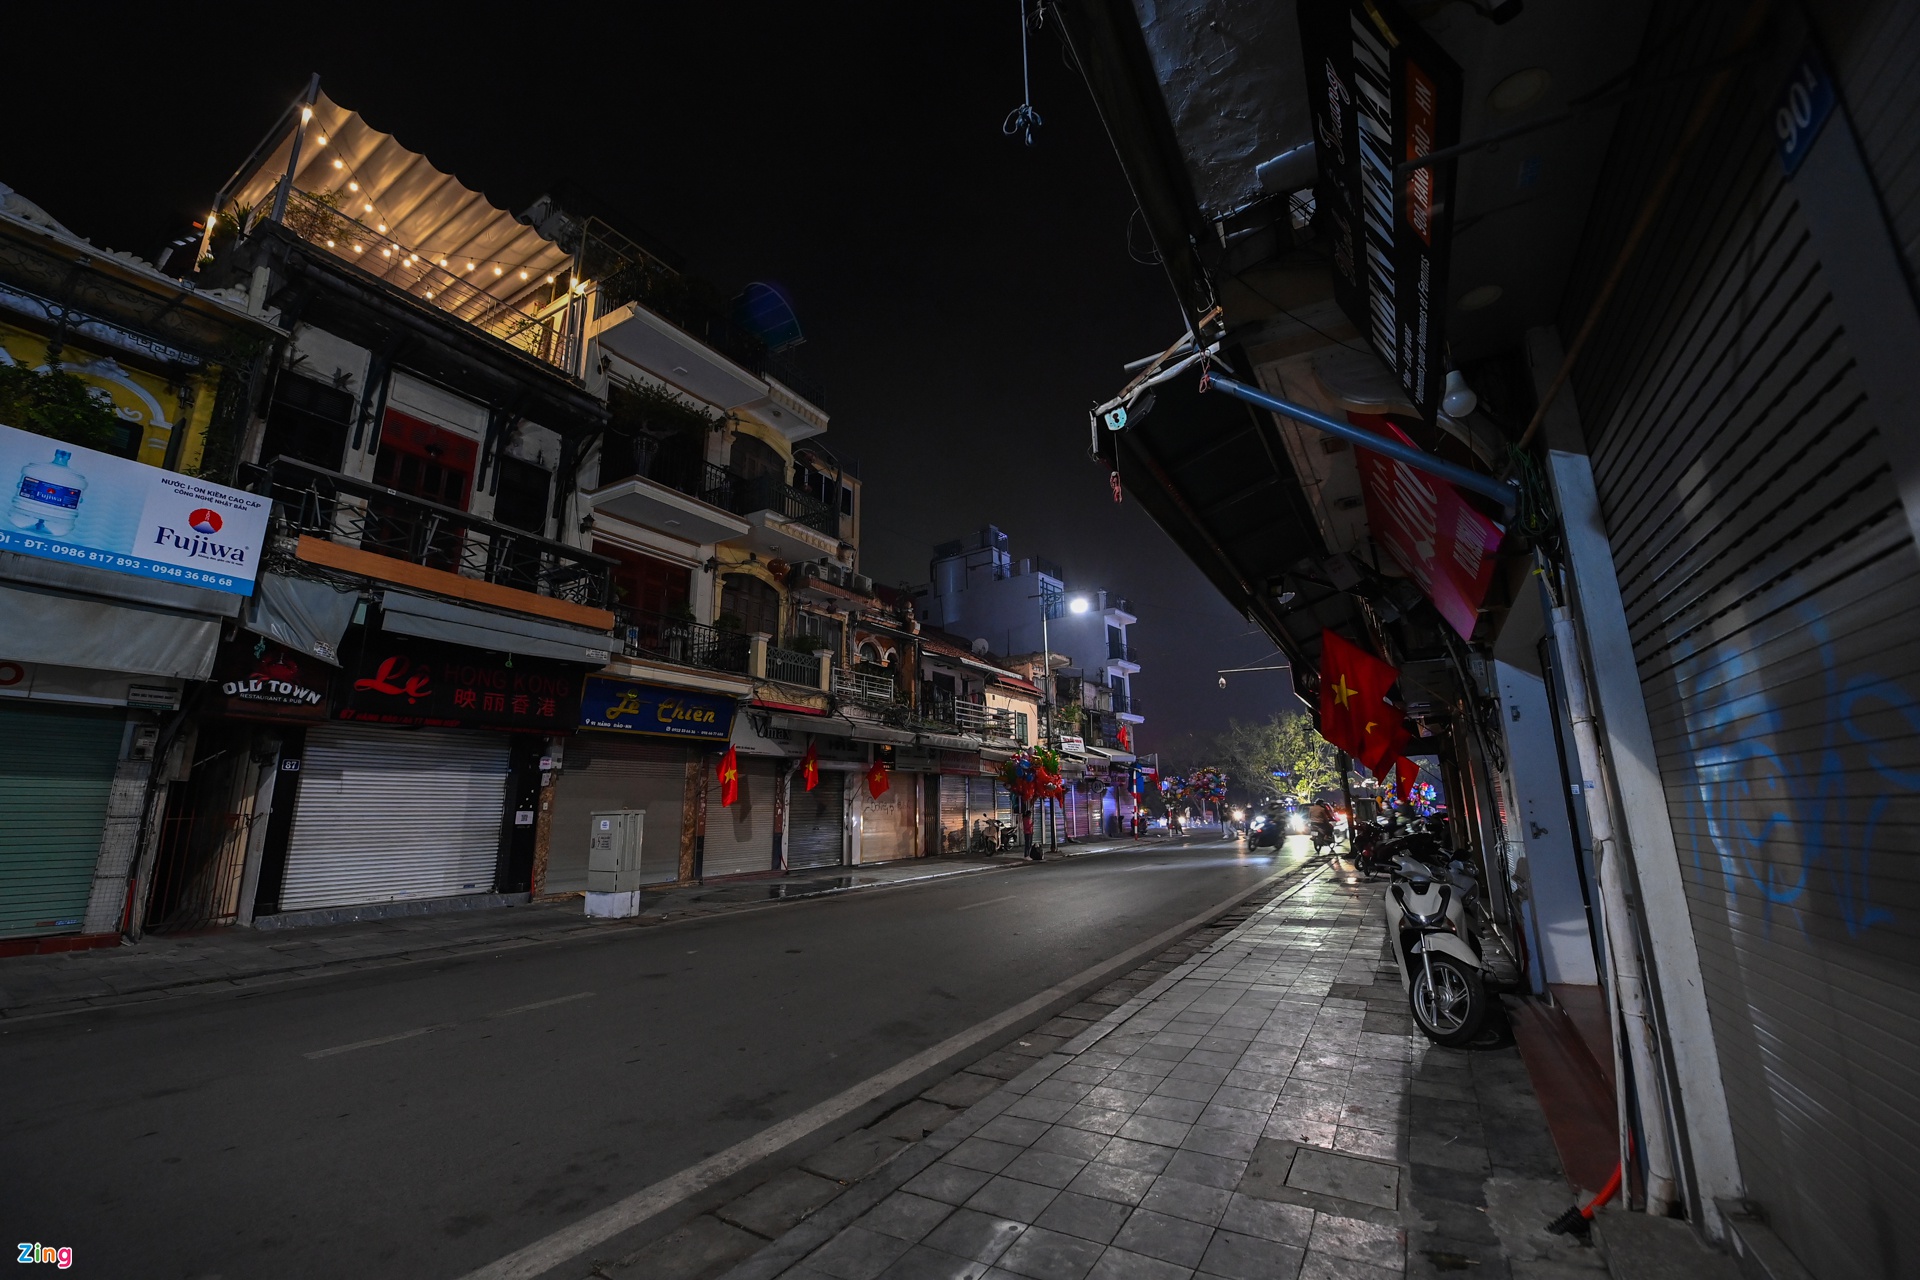 Nhiều nhà hàng tại quận Hoàn Kiếm đóng cửa từ sớm, không đón khách.

Nhiều nhà hàng tại quận Hoàn Kiếm đóng cửa từ sớm, không đón khách.